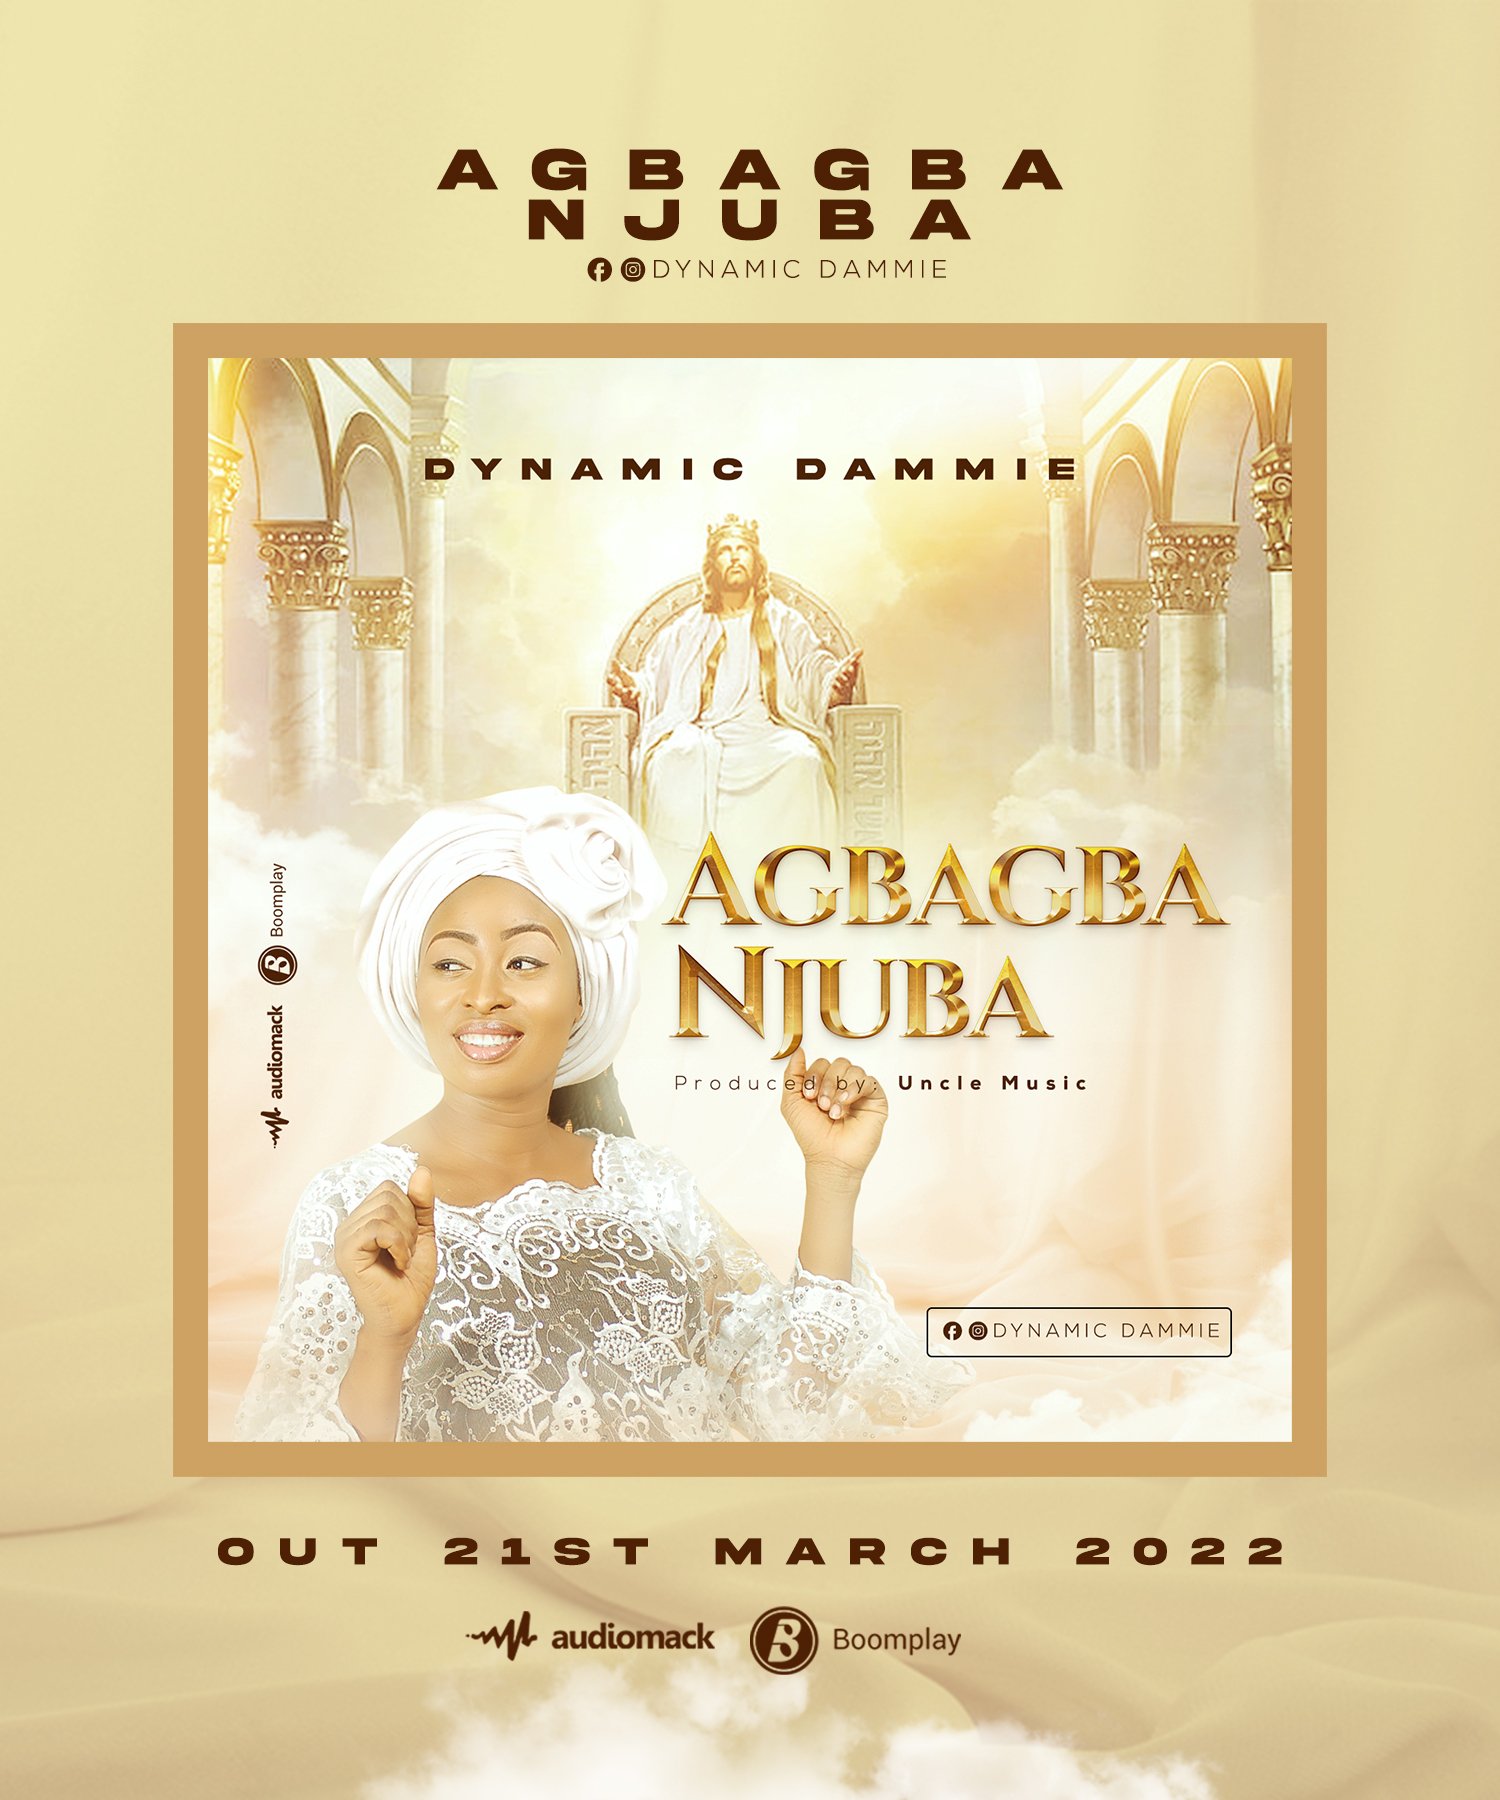 DOWNLOAD: AGBAGBA NJUBA.mp3 By Ayeni Oluwadamilola